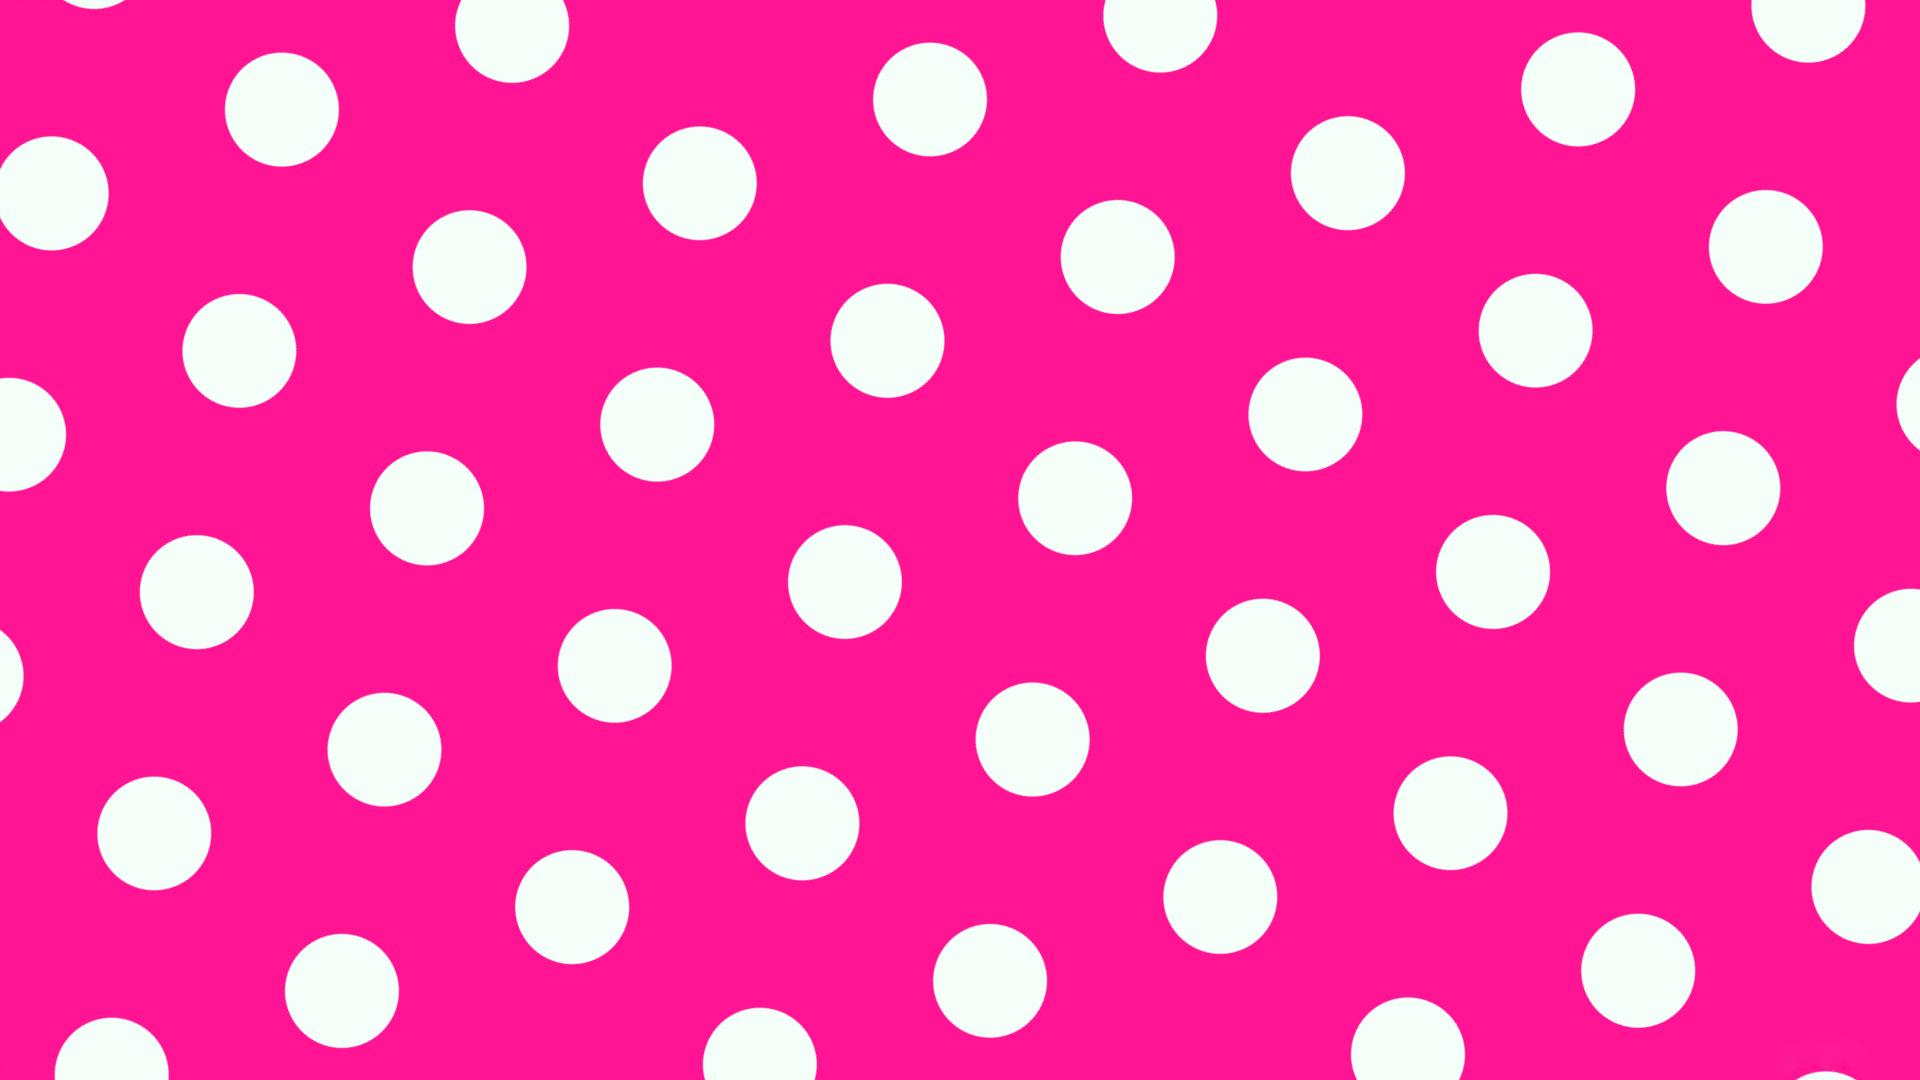 Polka Dot, Pink and white theme, Feminine and sweet, Elegant design, 1920x1080 Full HD Desktop